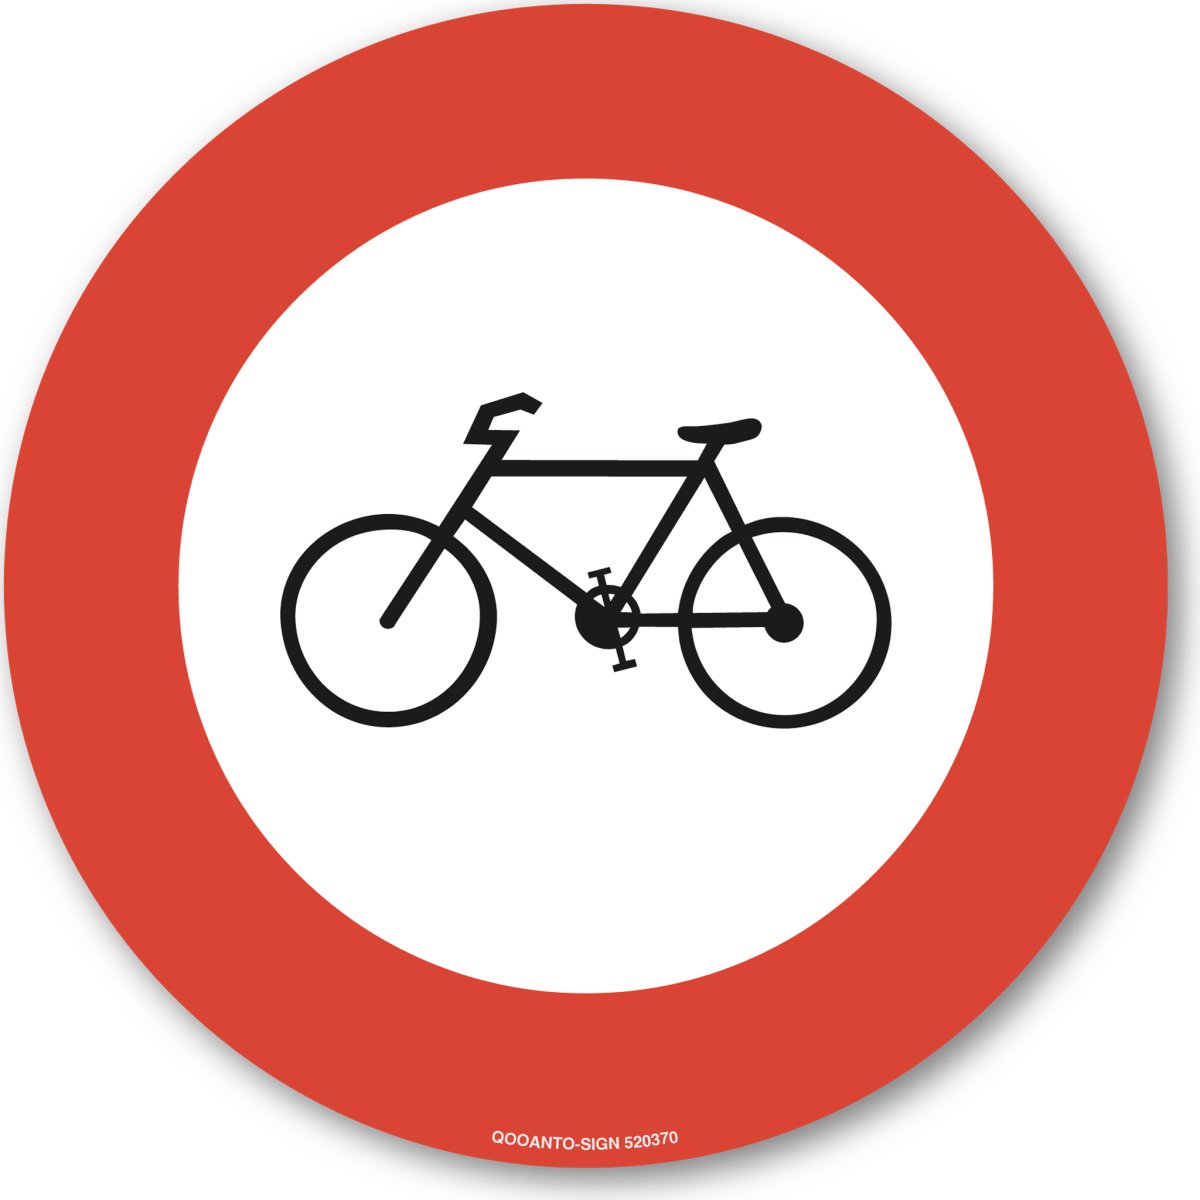 Verbot Für Fahrräder Und Motorfahrräder Verkehrsschild oder Aufkleber aus Alu-Verbund oder Selbstklebefolie mit UV-Schutz - QOOANTO-SIGN